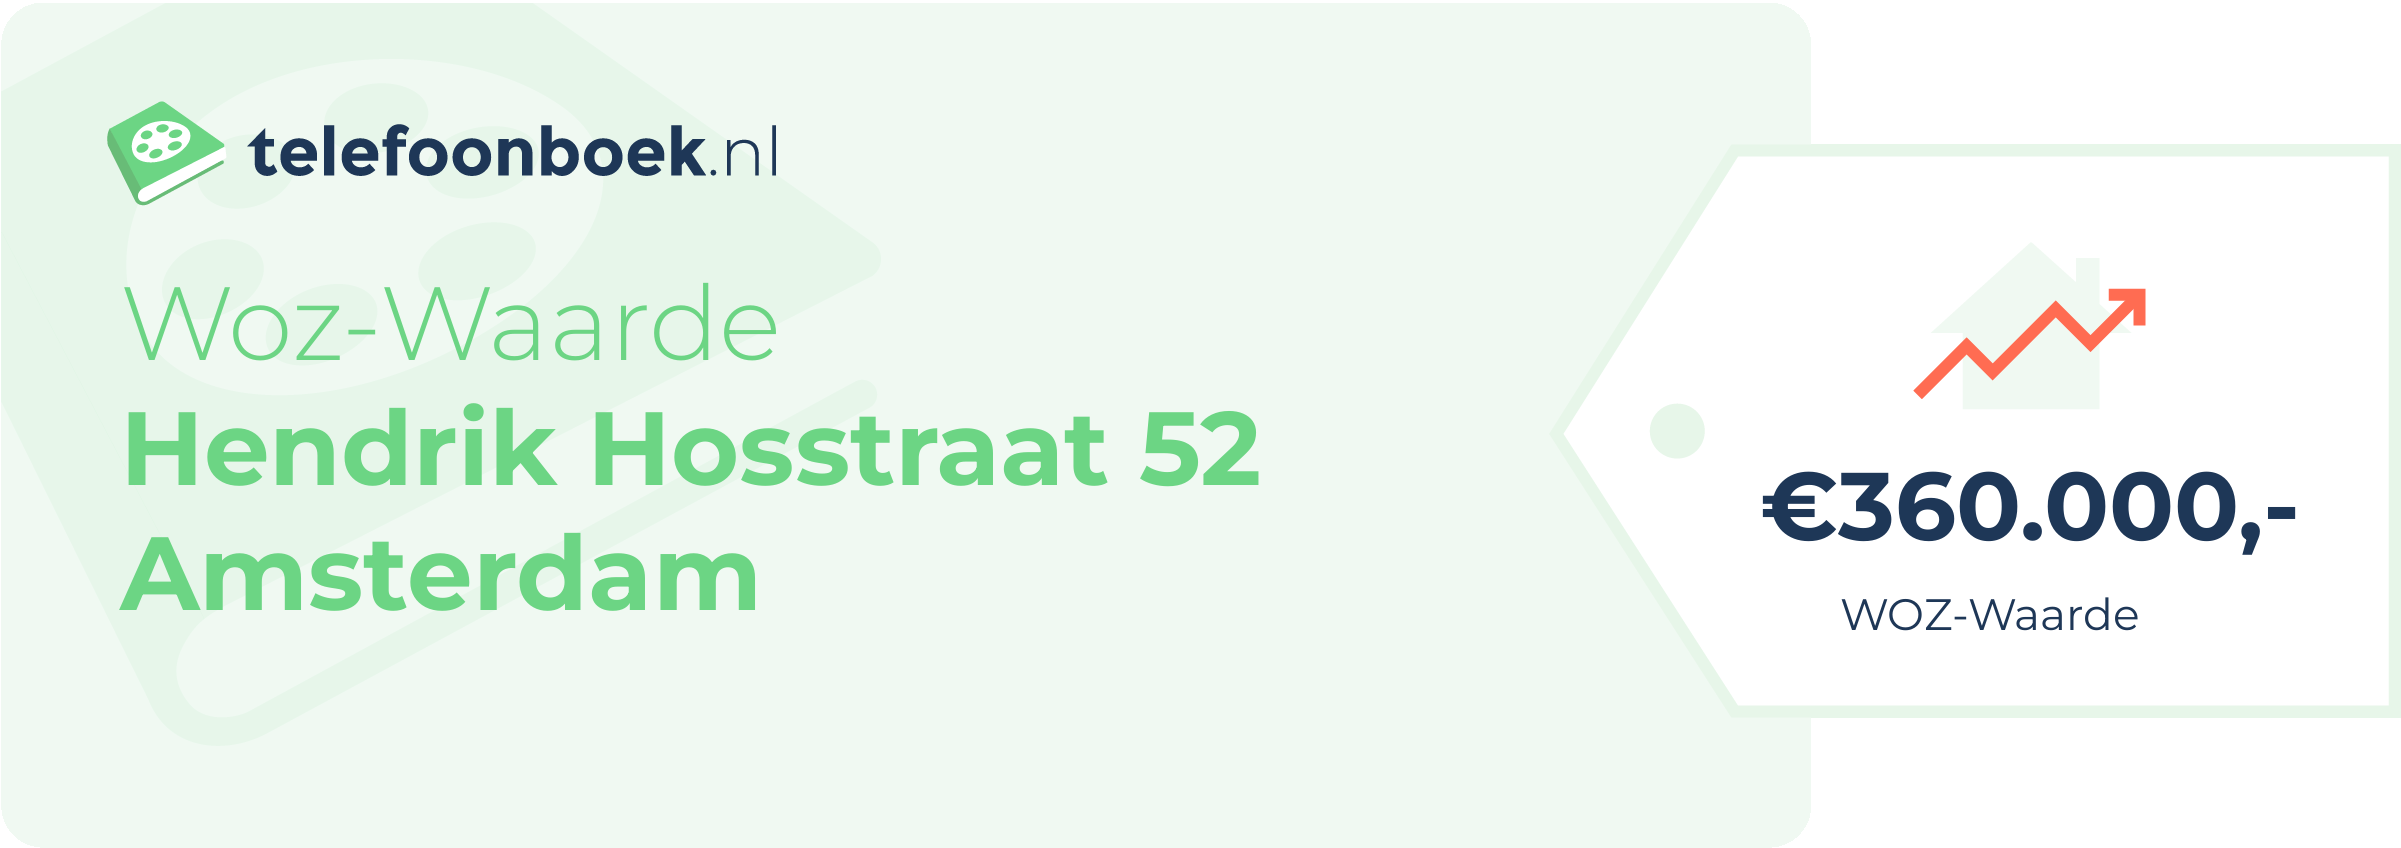 WOZ-waarde Hendrik Hosstraat 52 Amsterdam